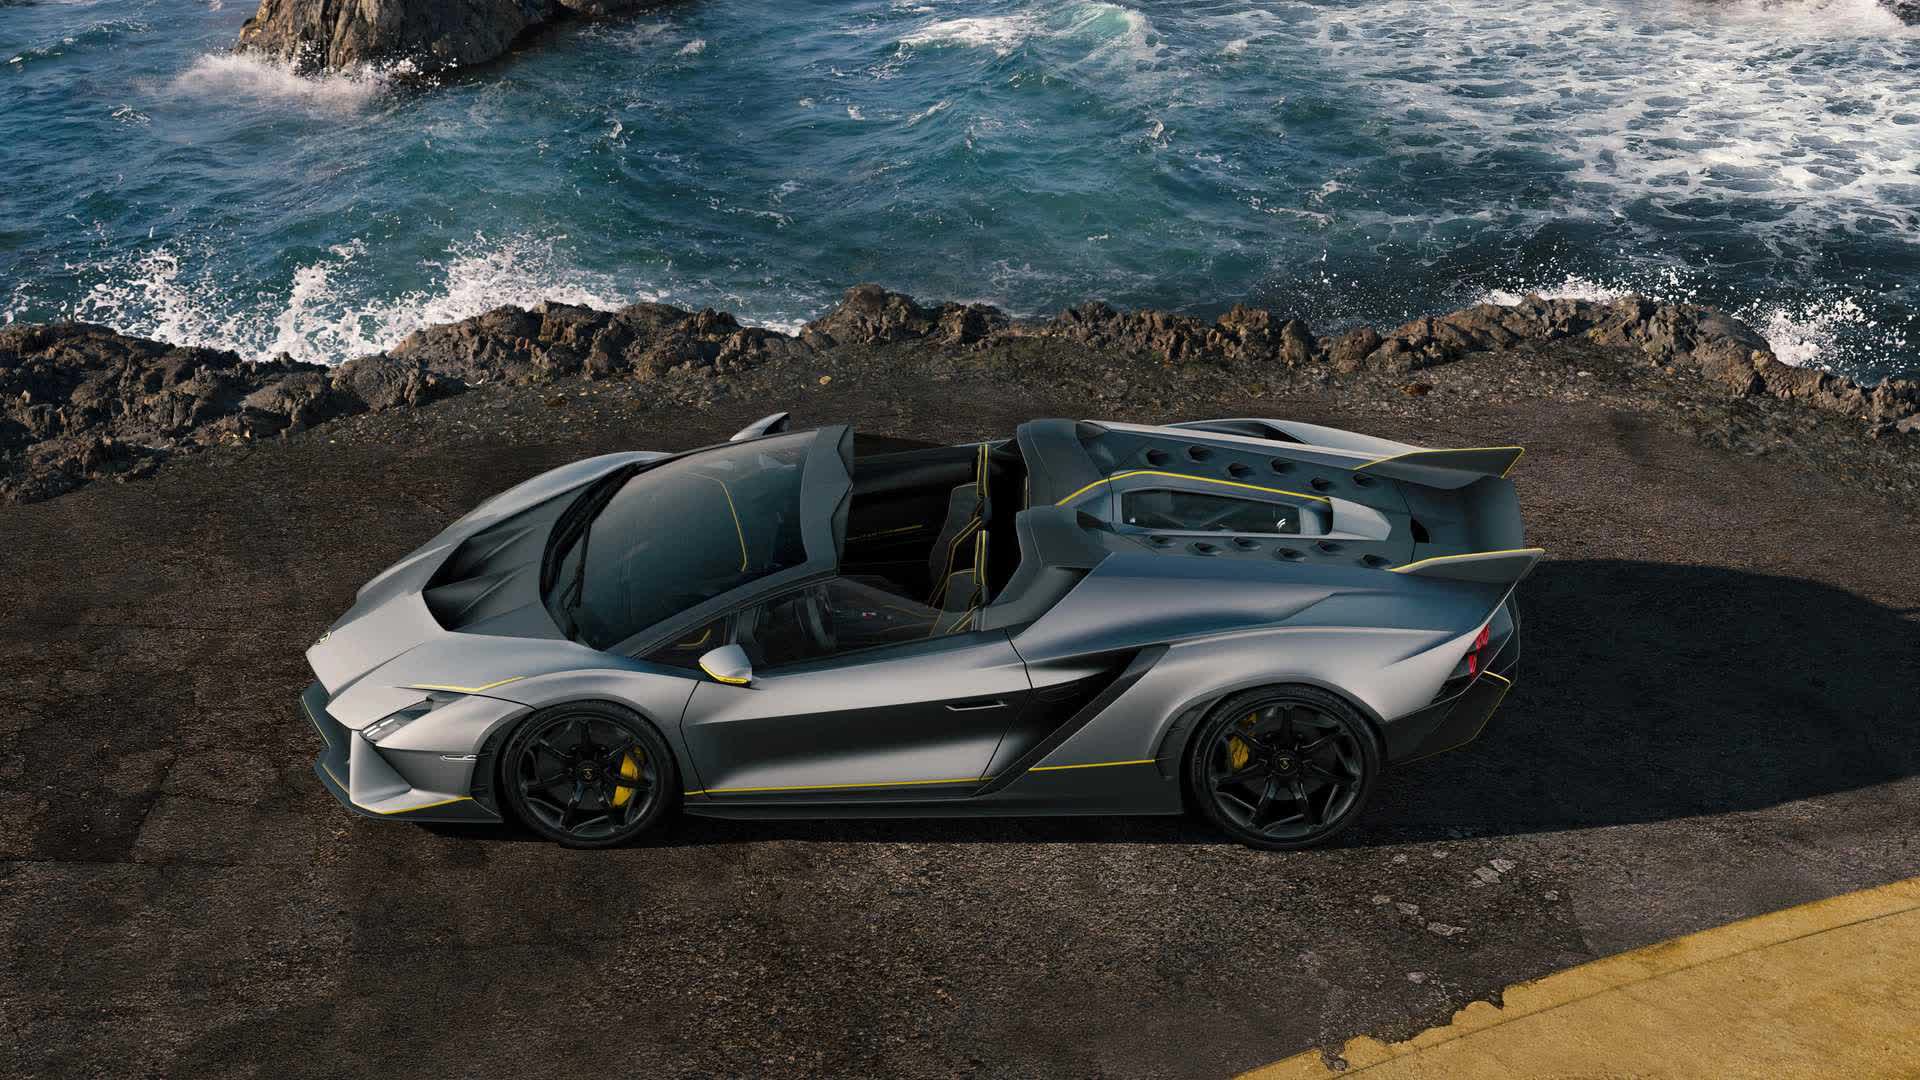 Lamborghini ra mắt bộ đôi siêu xe V12 chạy xăng cuối cùng, sau đây sẽ toàn siêu xe điện êm ru chưa biết nẹt pô kiểu gì - Ảnh 12.